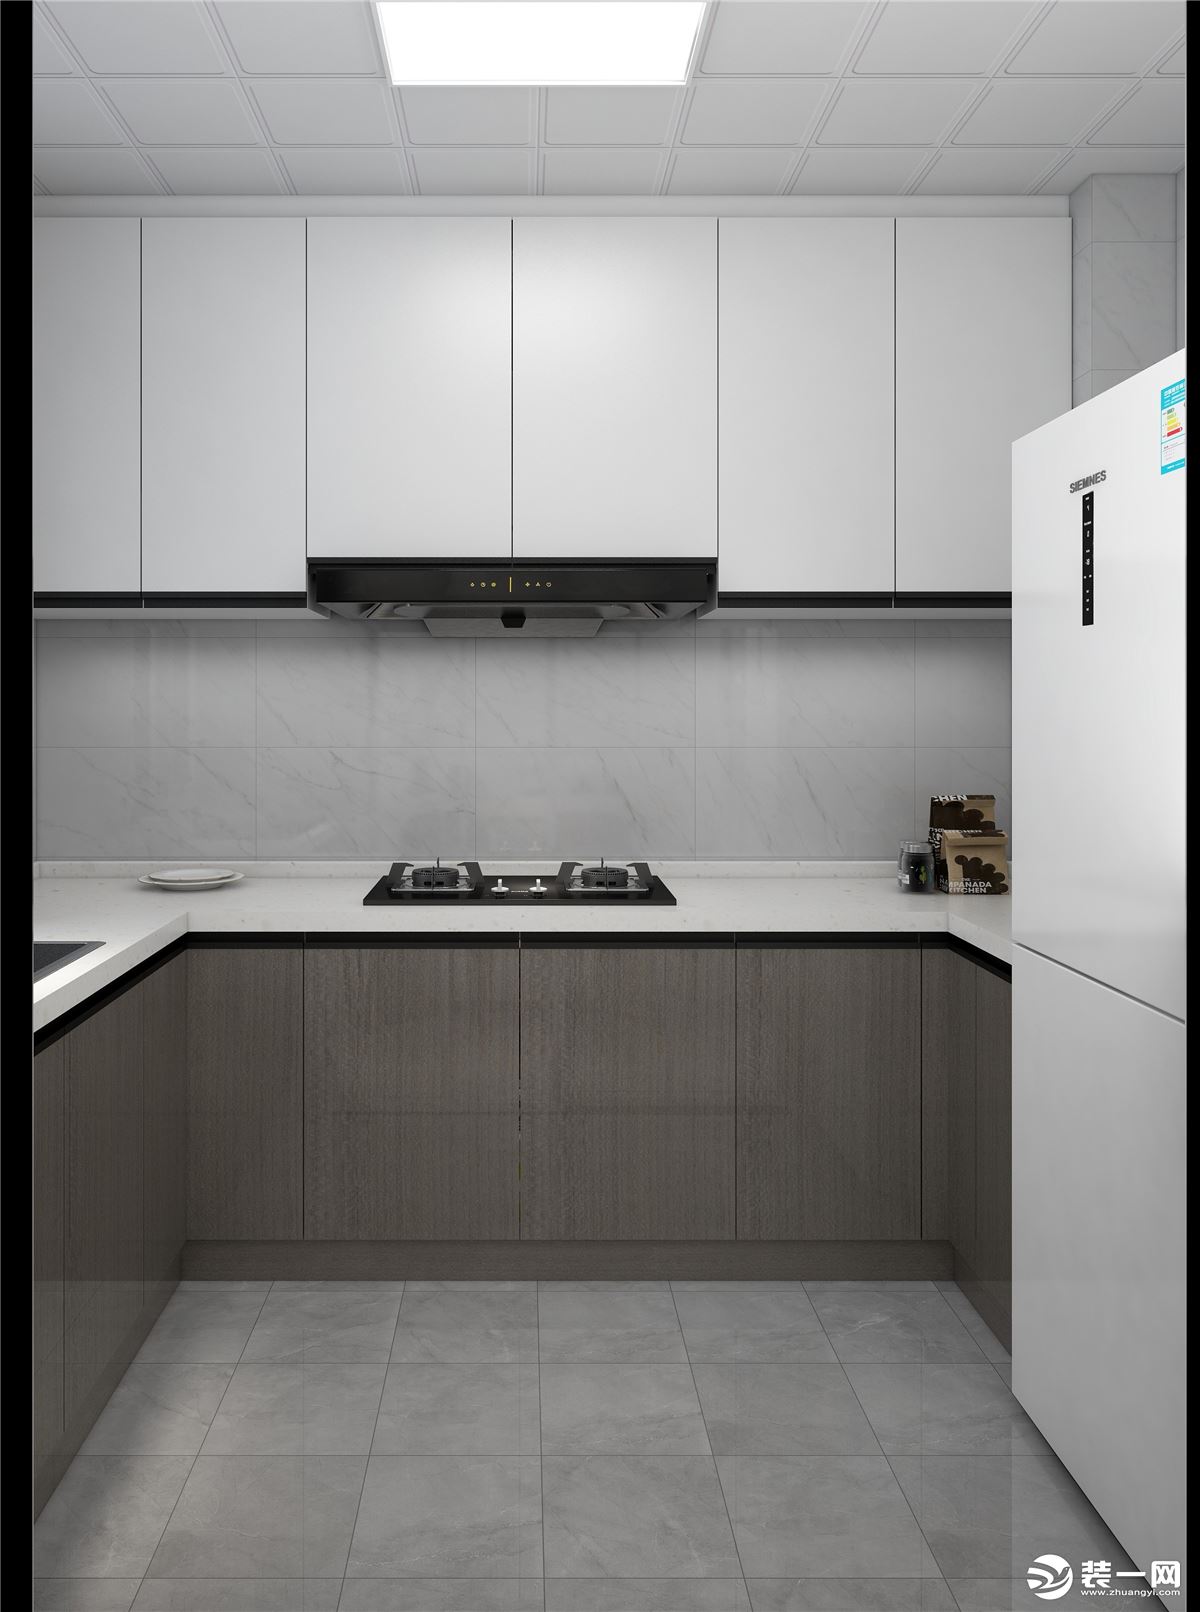 地柜采用阿拉斯加橡木和吊柜采用雪松白，由于厨房空间采光不太好，采用浅色墙砖让空间会亮一些。